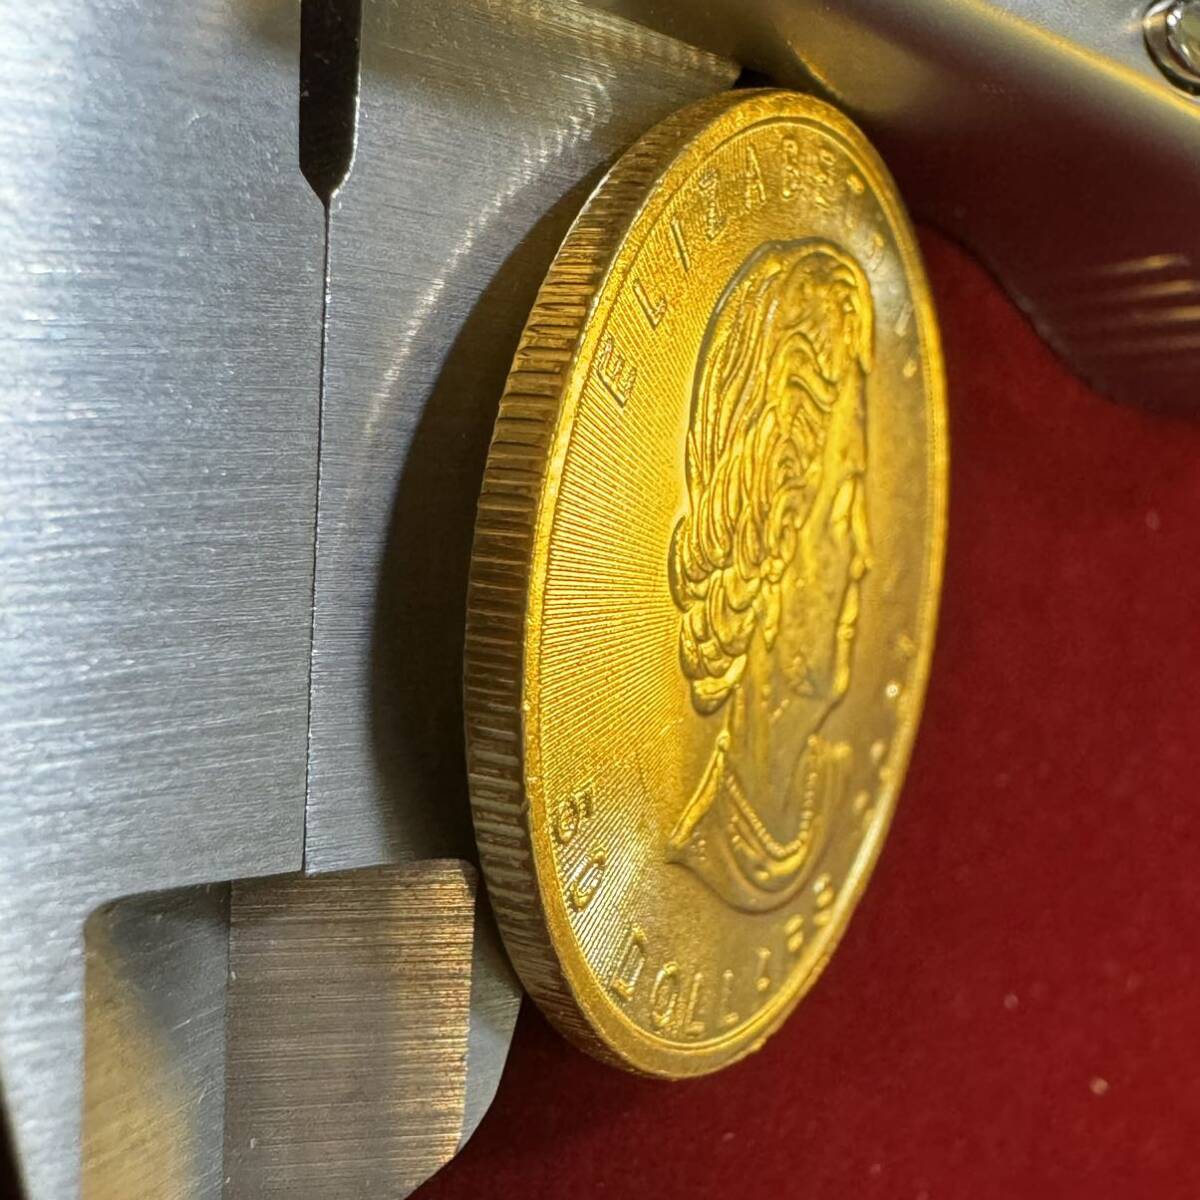 カナダ 英連邦 2021年 硬貨 古銭 エリザベス2世 メープル サトウカエデ 国章 記念幣 コイン 外国古銭 海外硬貨 _画像3